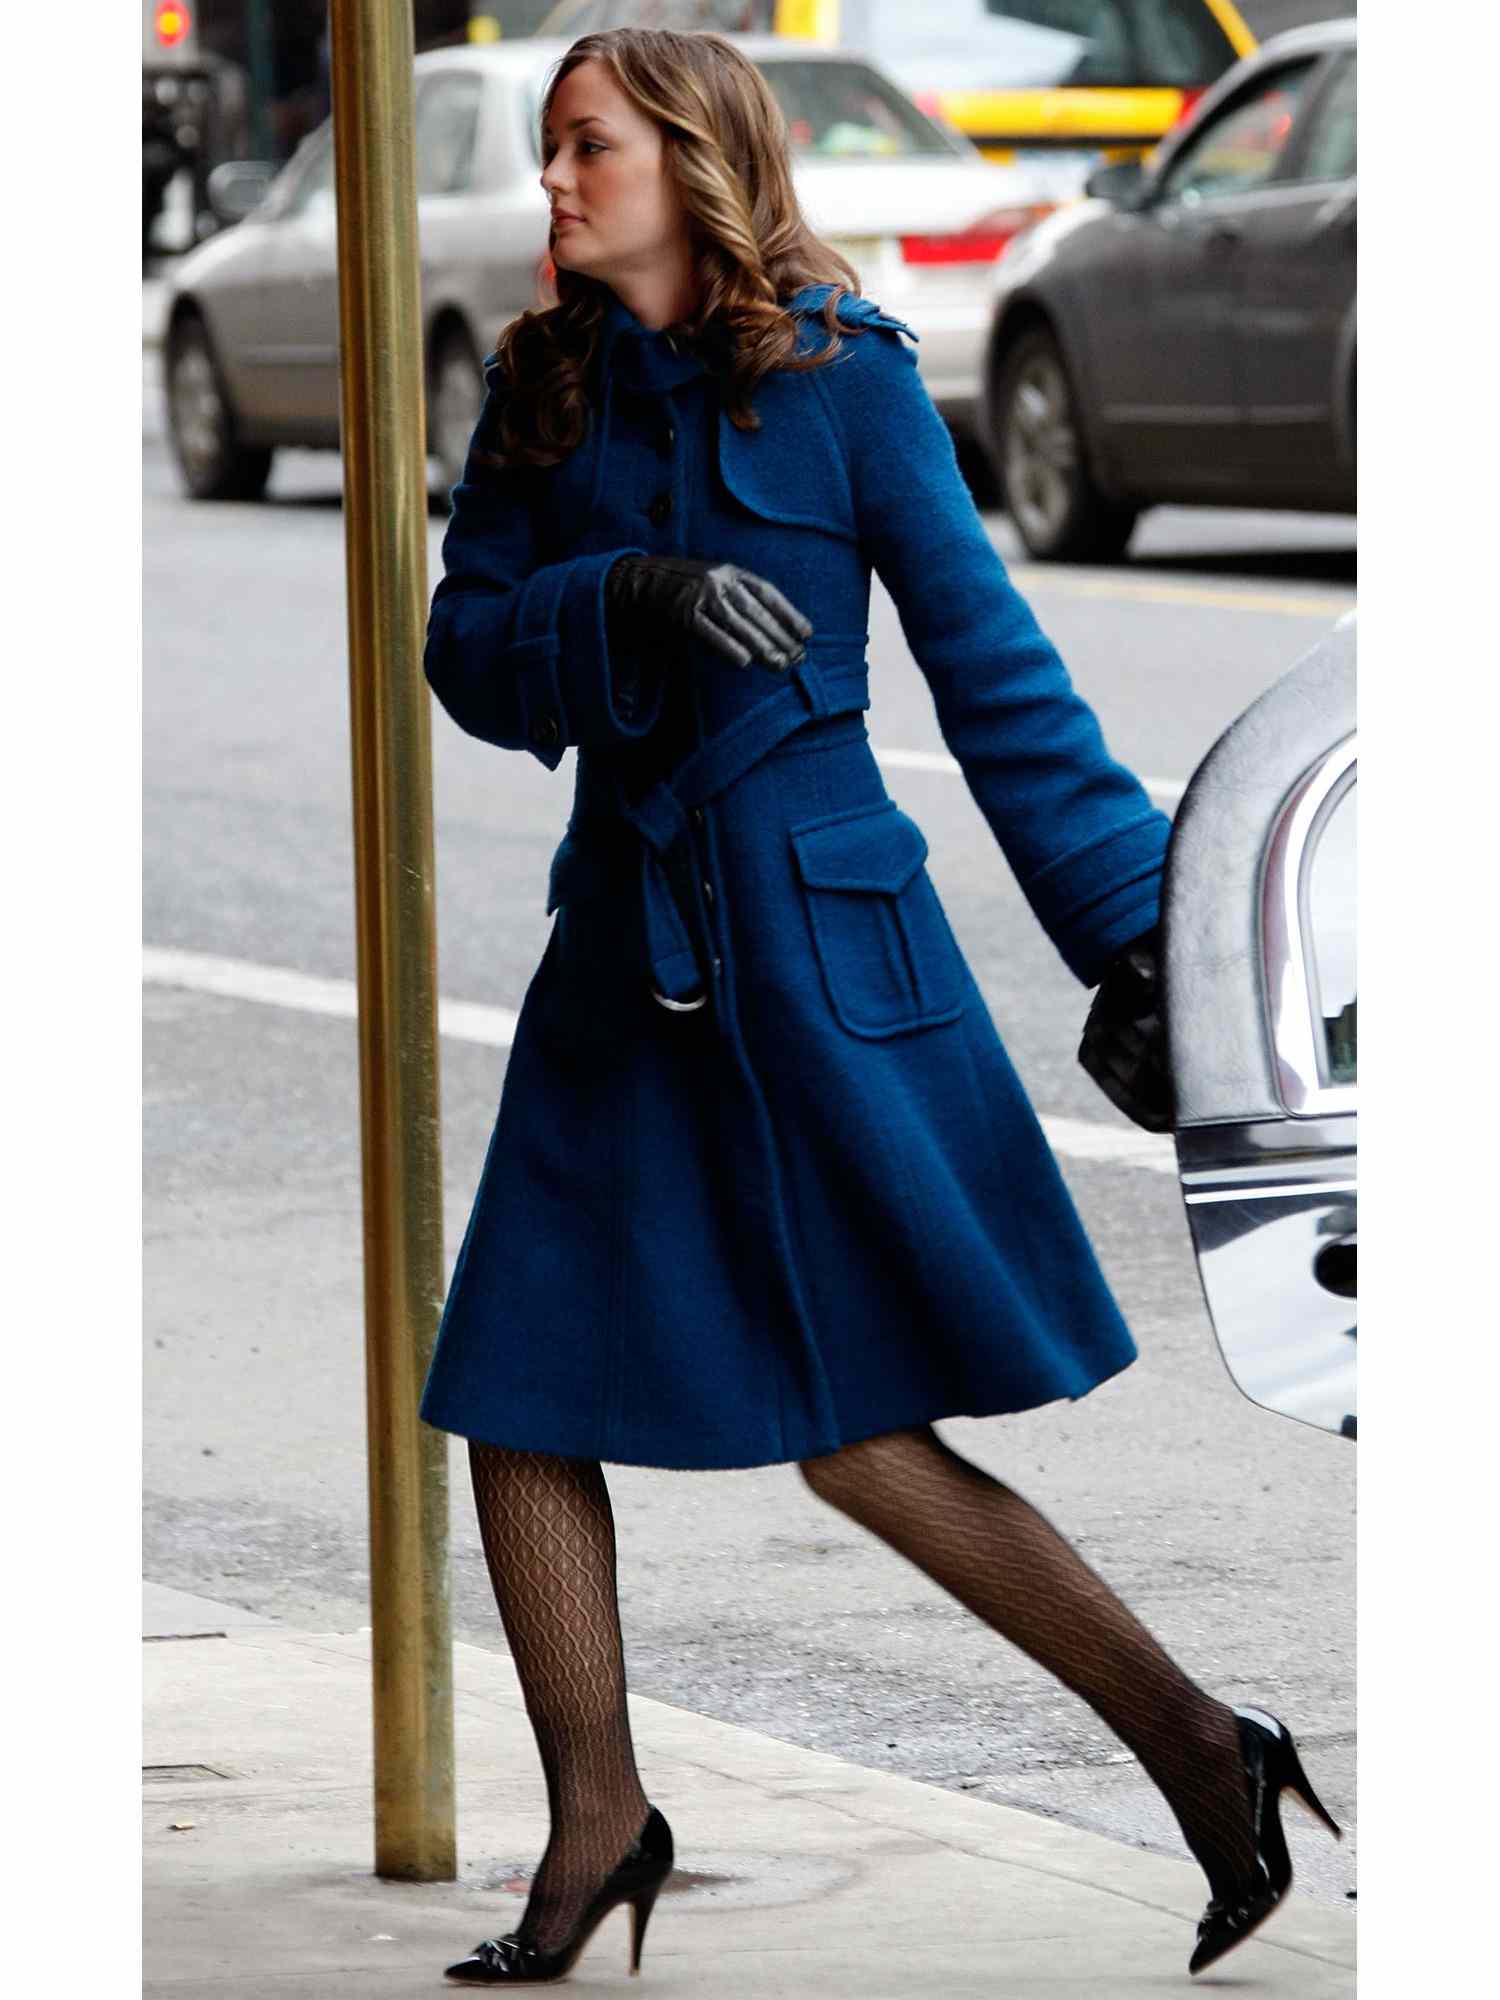 Leighton Meszer no papel de Blair Waldorf em um longo casaco azul escuro com sapatos de salto alto preto e meia-calça com padrões